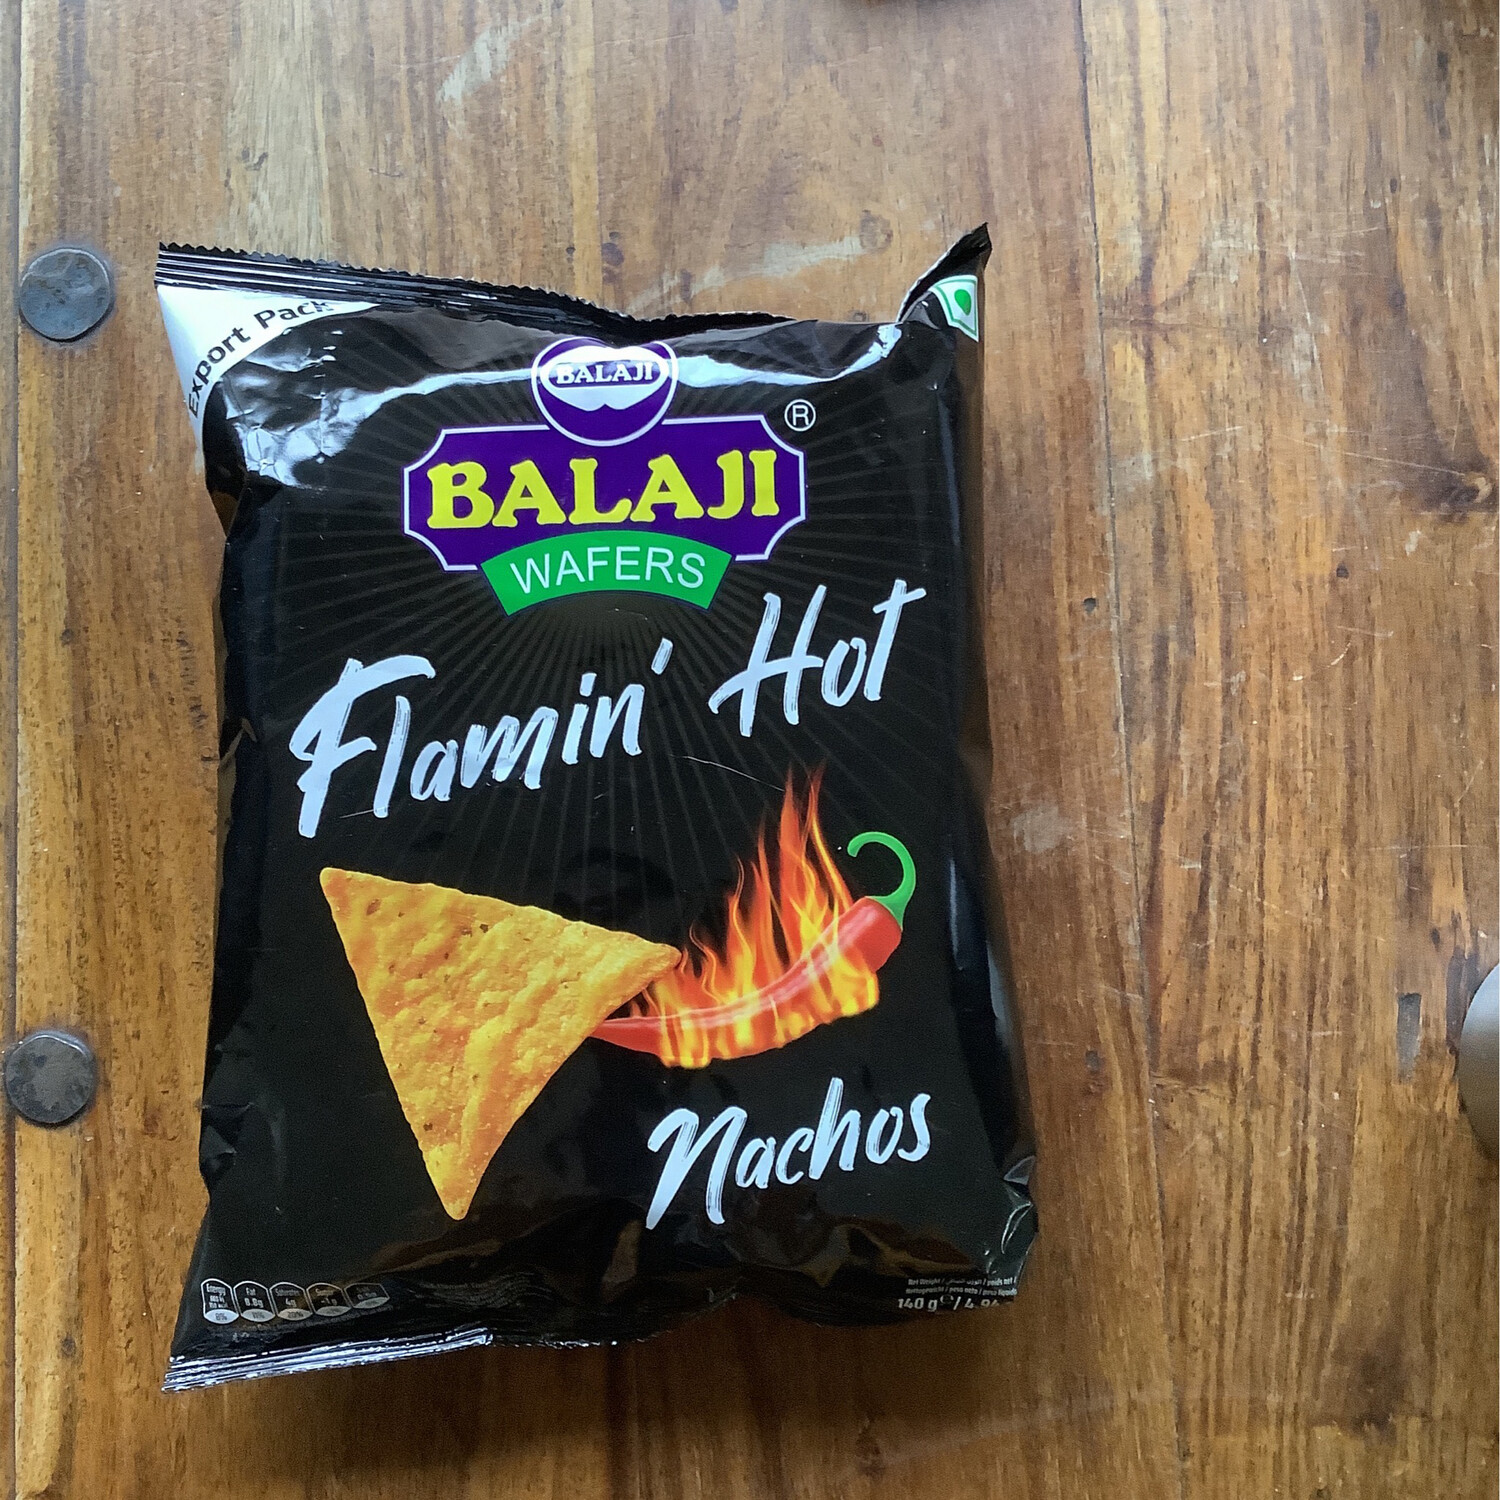 Balaji flamin hot nachos 140g